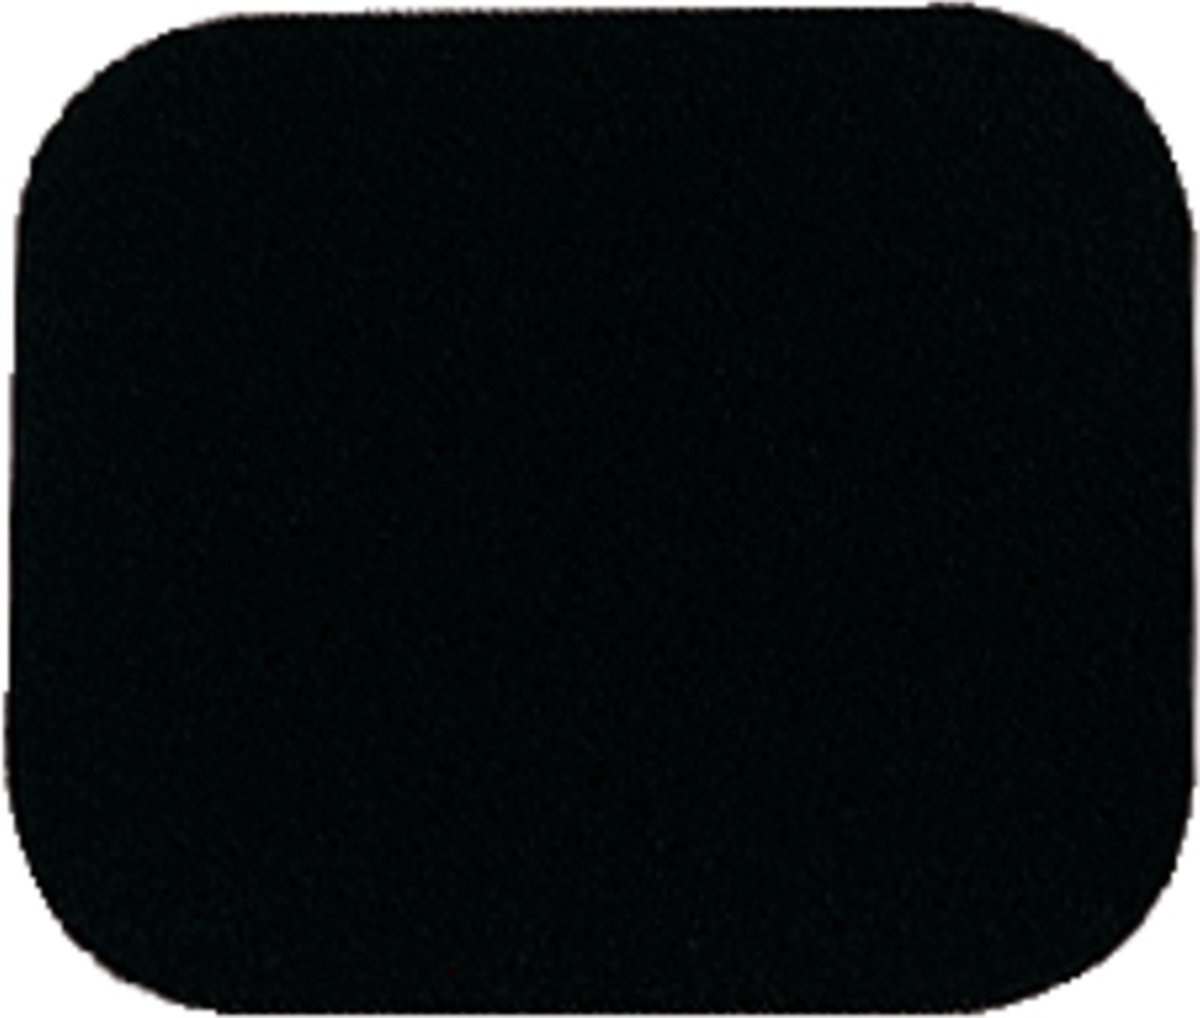 Muismat Quantore 230x190x6mm zwart - Quantore